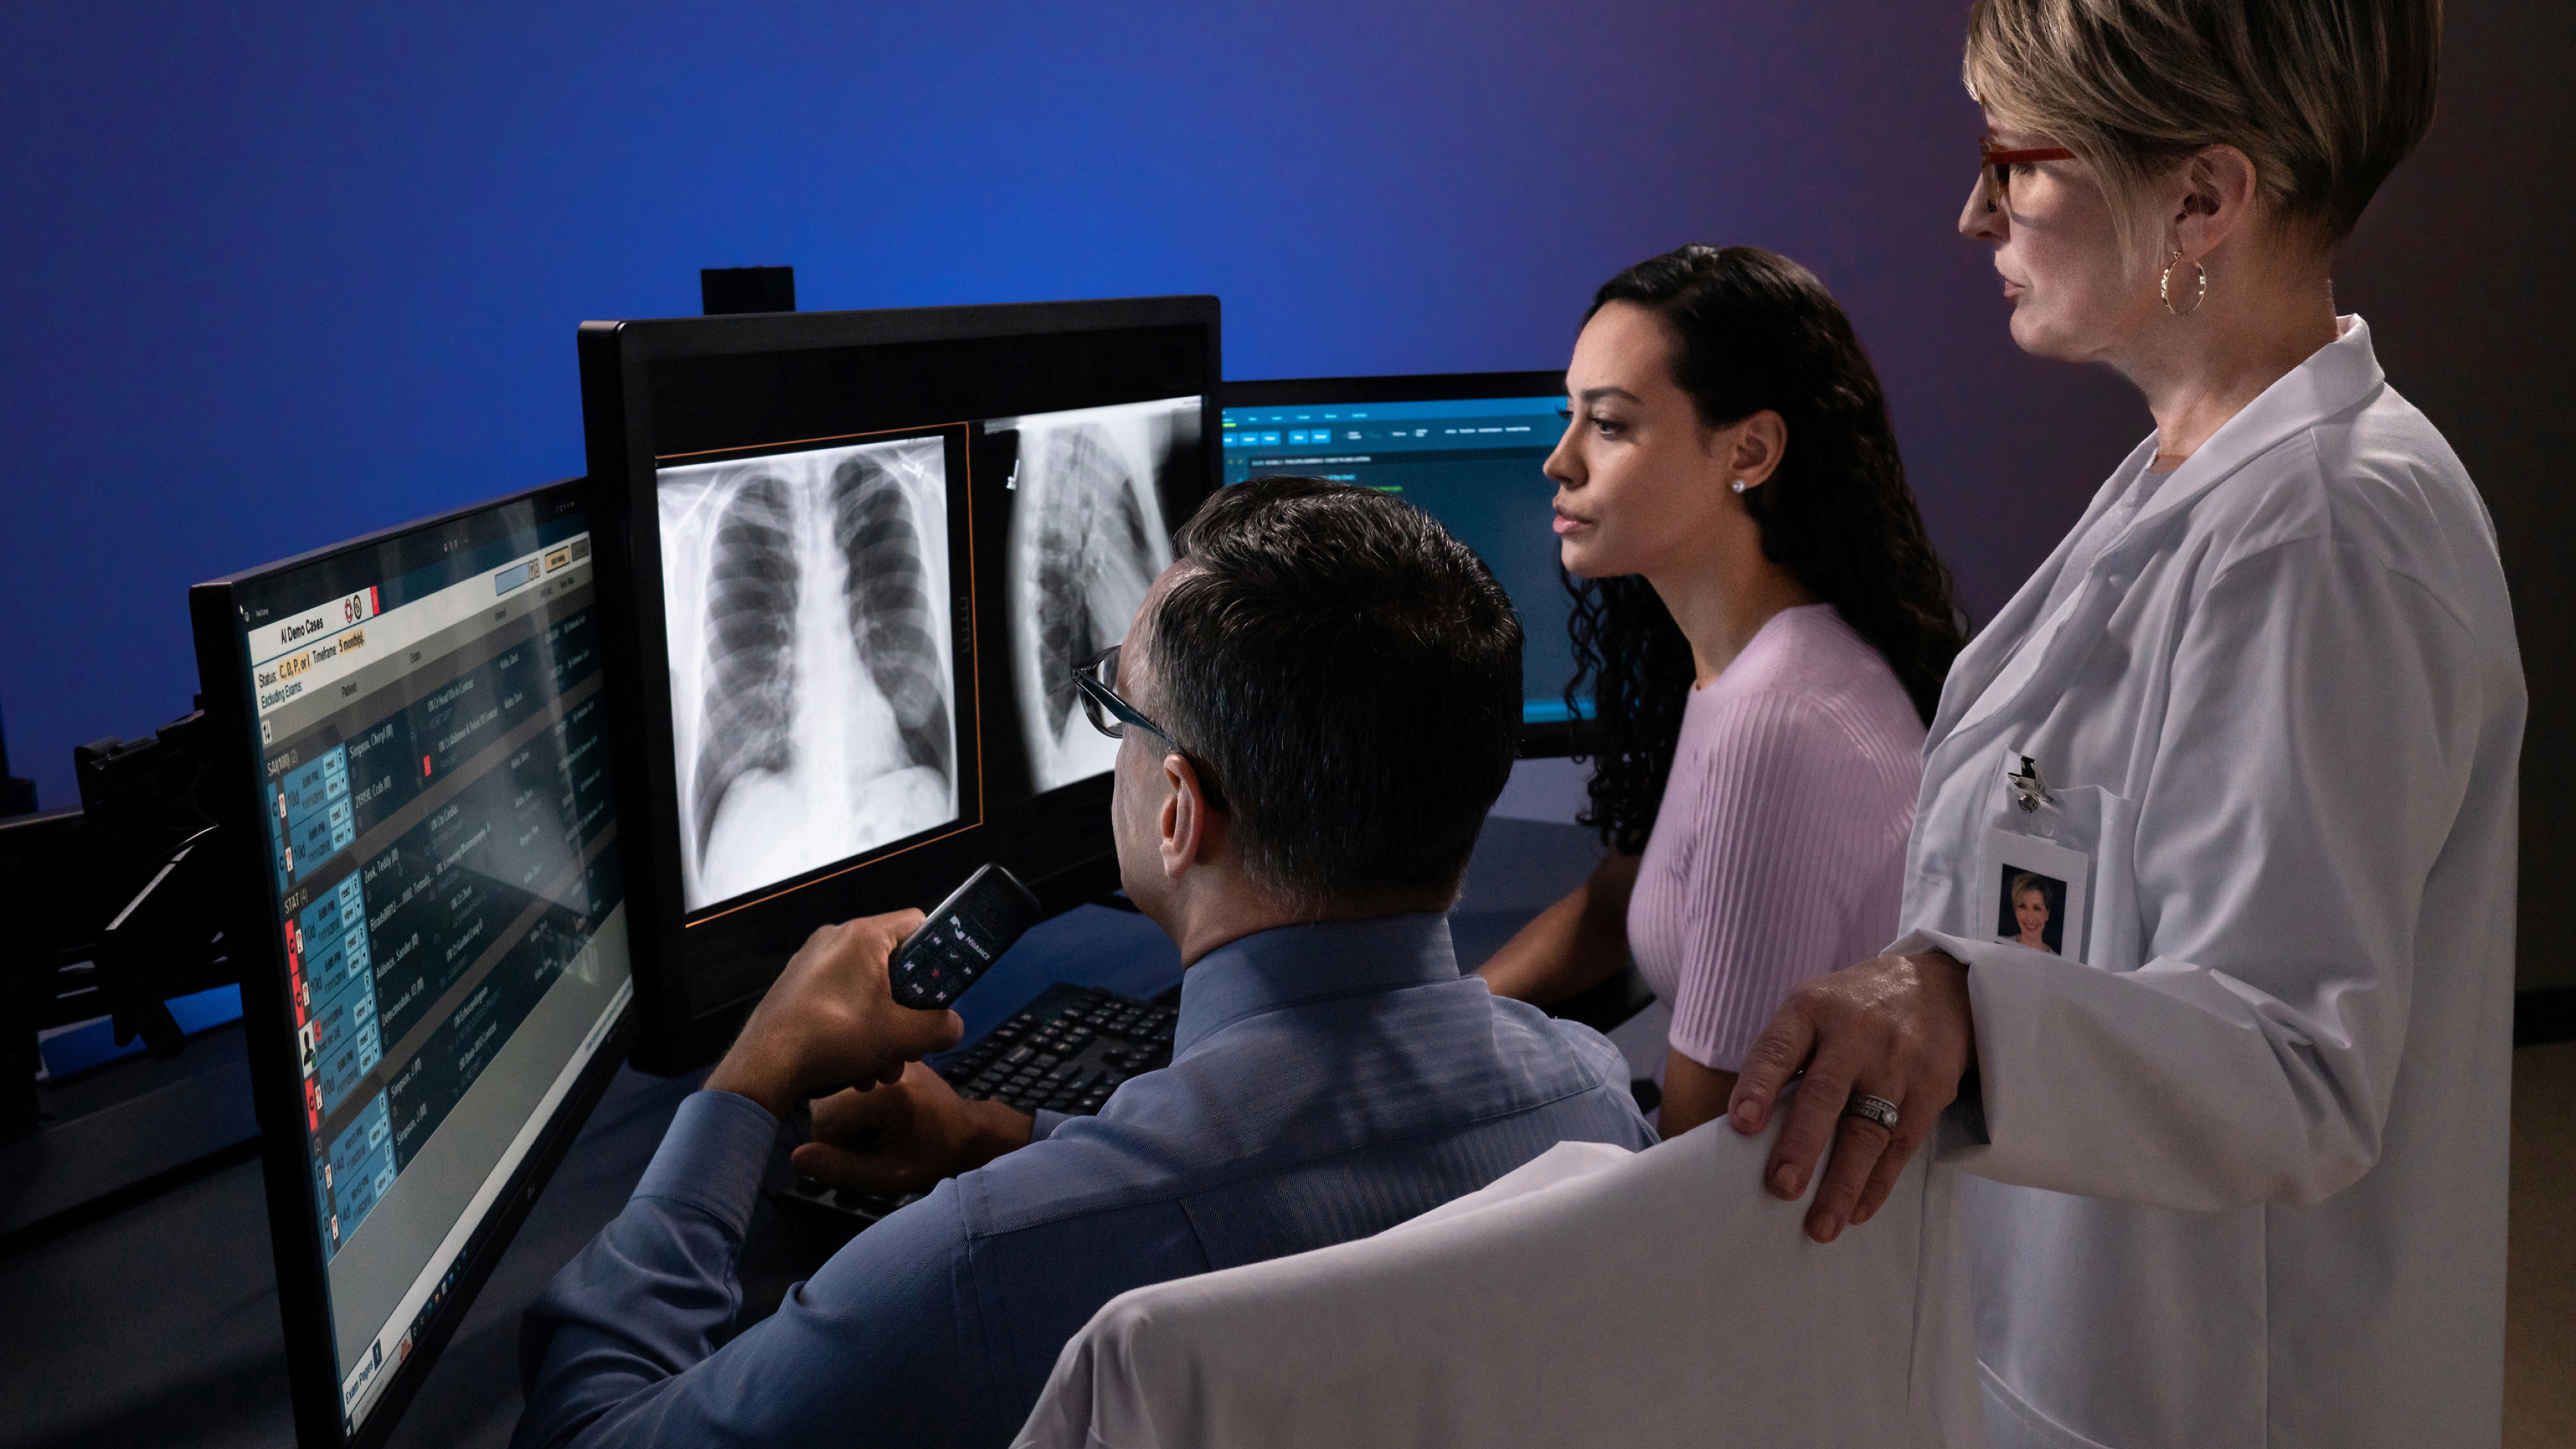 Röntgenfelvételeket néző emberek csoportja